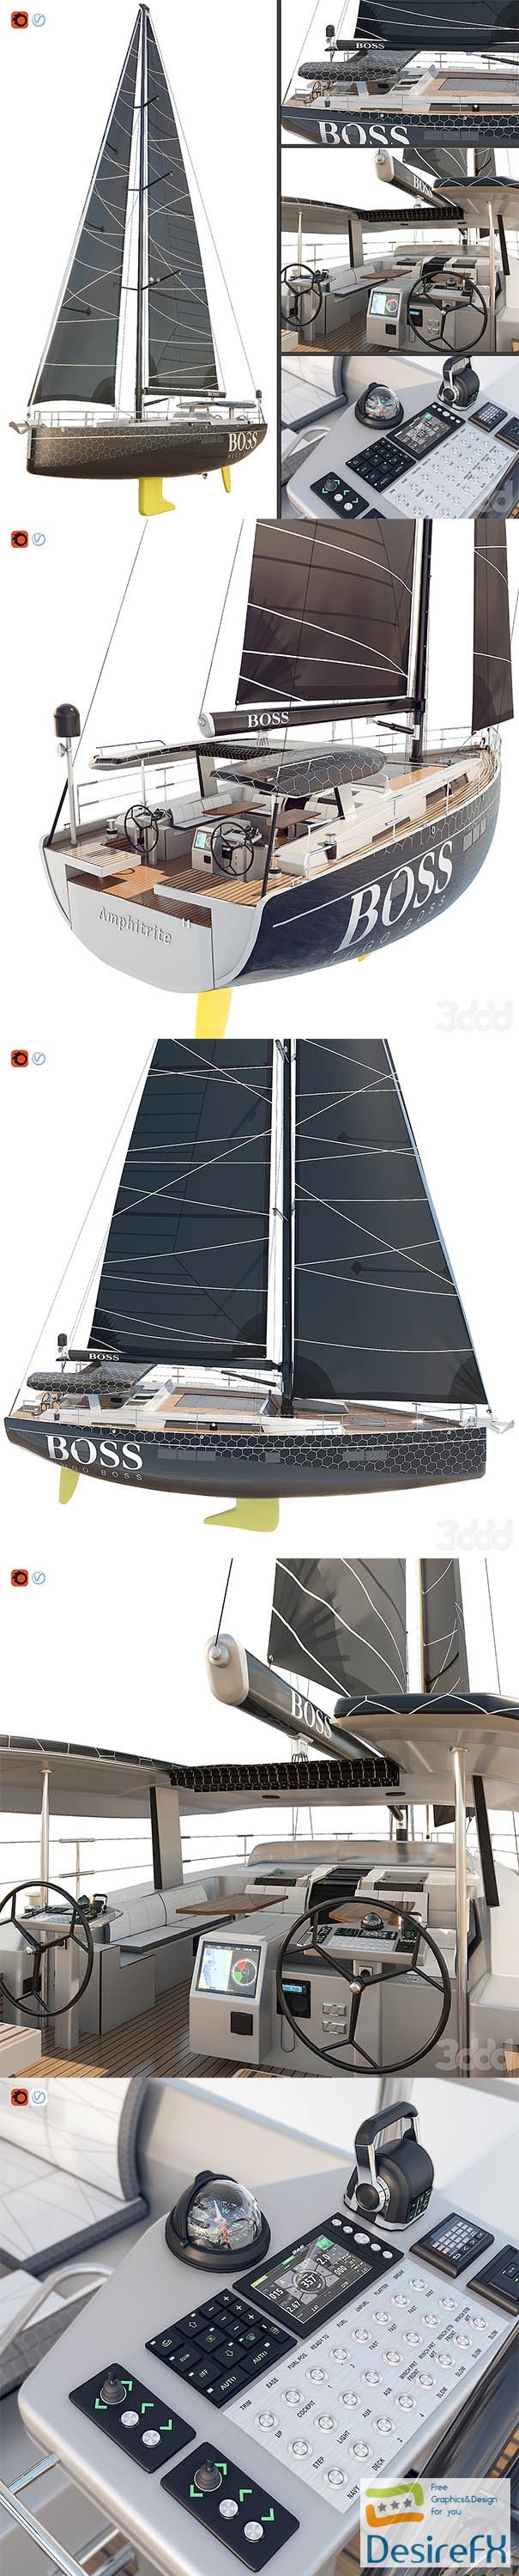 Hanse 675 Yacht Boss